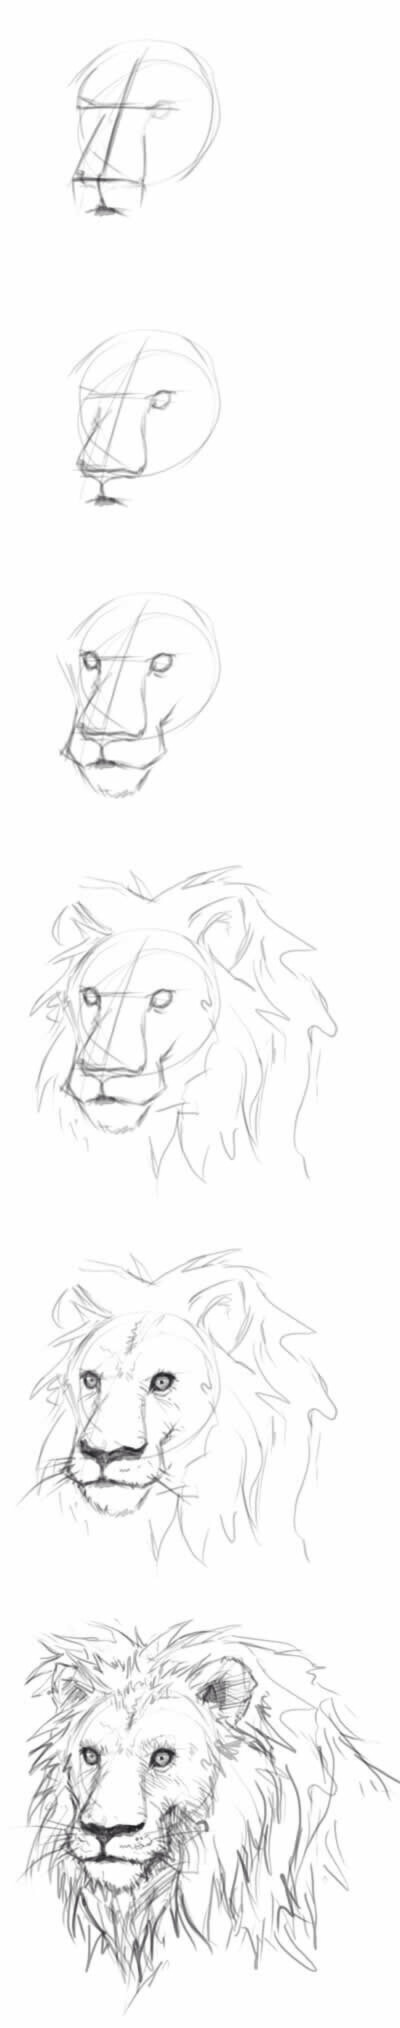 这个特棒，画狮子的，而且还不难。画动物什么的教程都挺稀少的，喜欢的收着吧～ 跟着一起画肯定会画的很好。